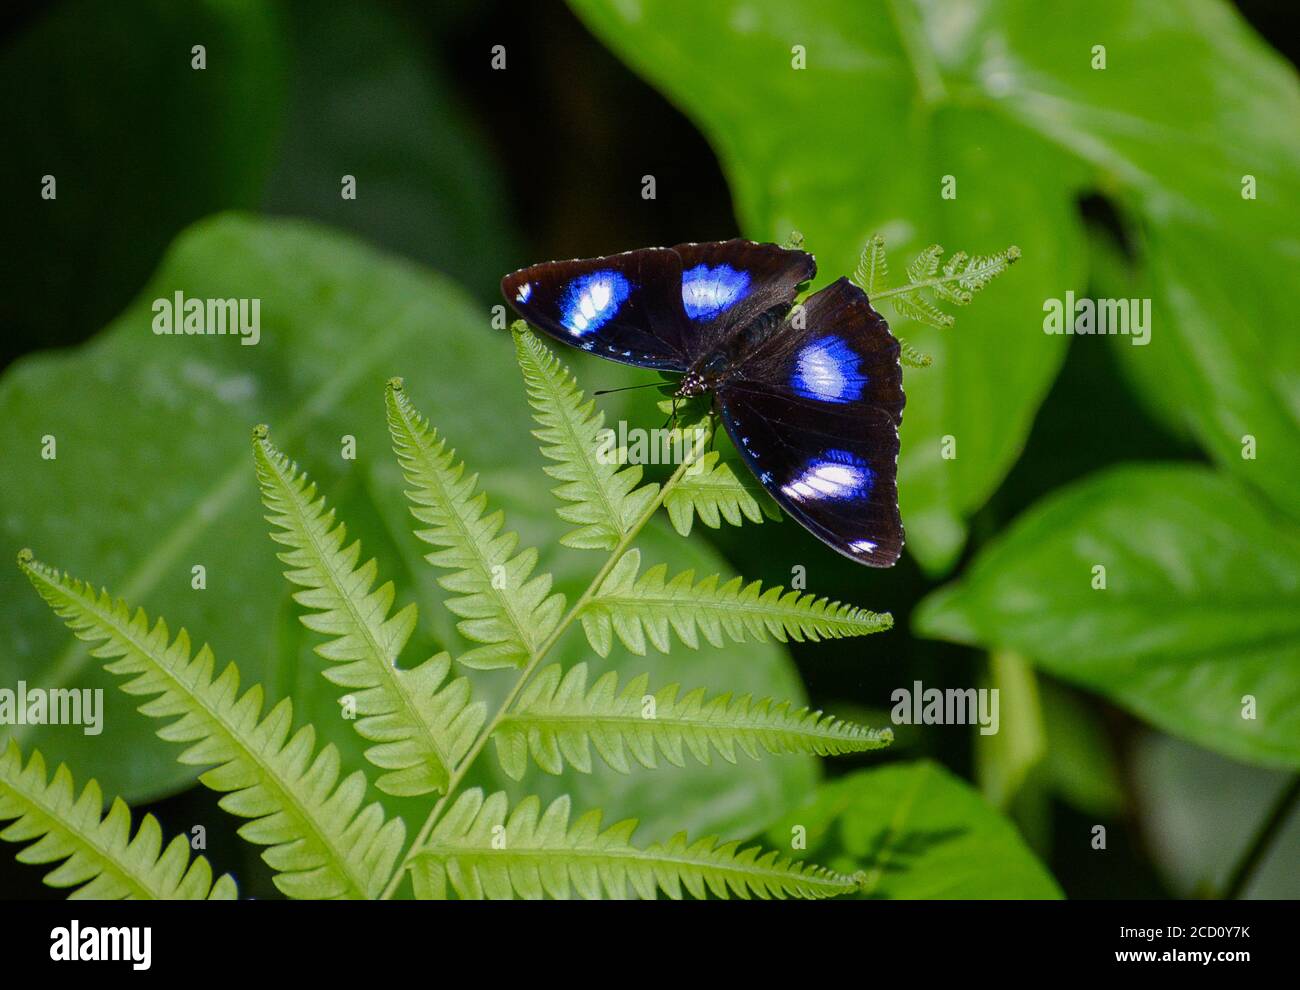 Sur une feuille de fougères, vous pouvez voir un papillon portant le nom - mouche commune - Hypolimnas bolina. Il a une belle couleur bleue. Banque D'Images